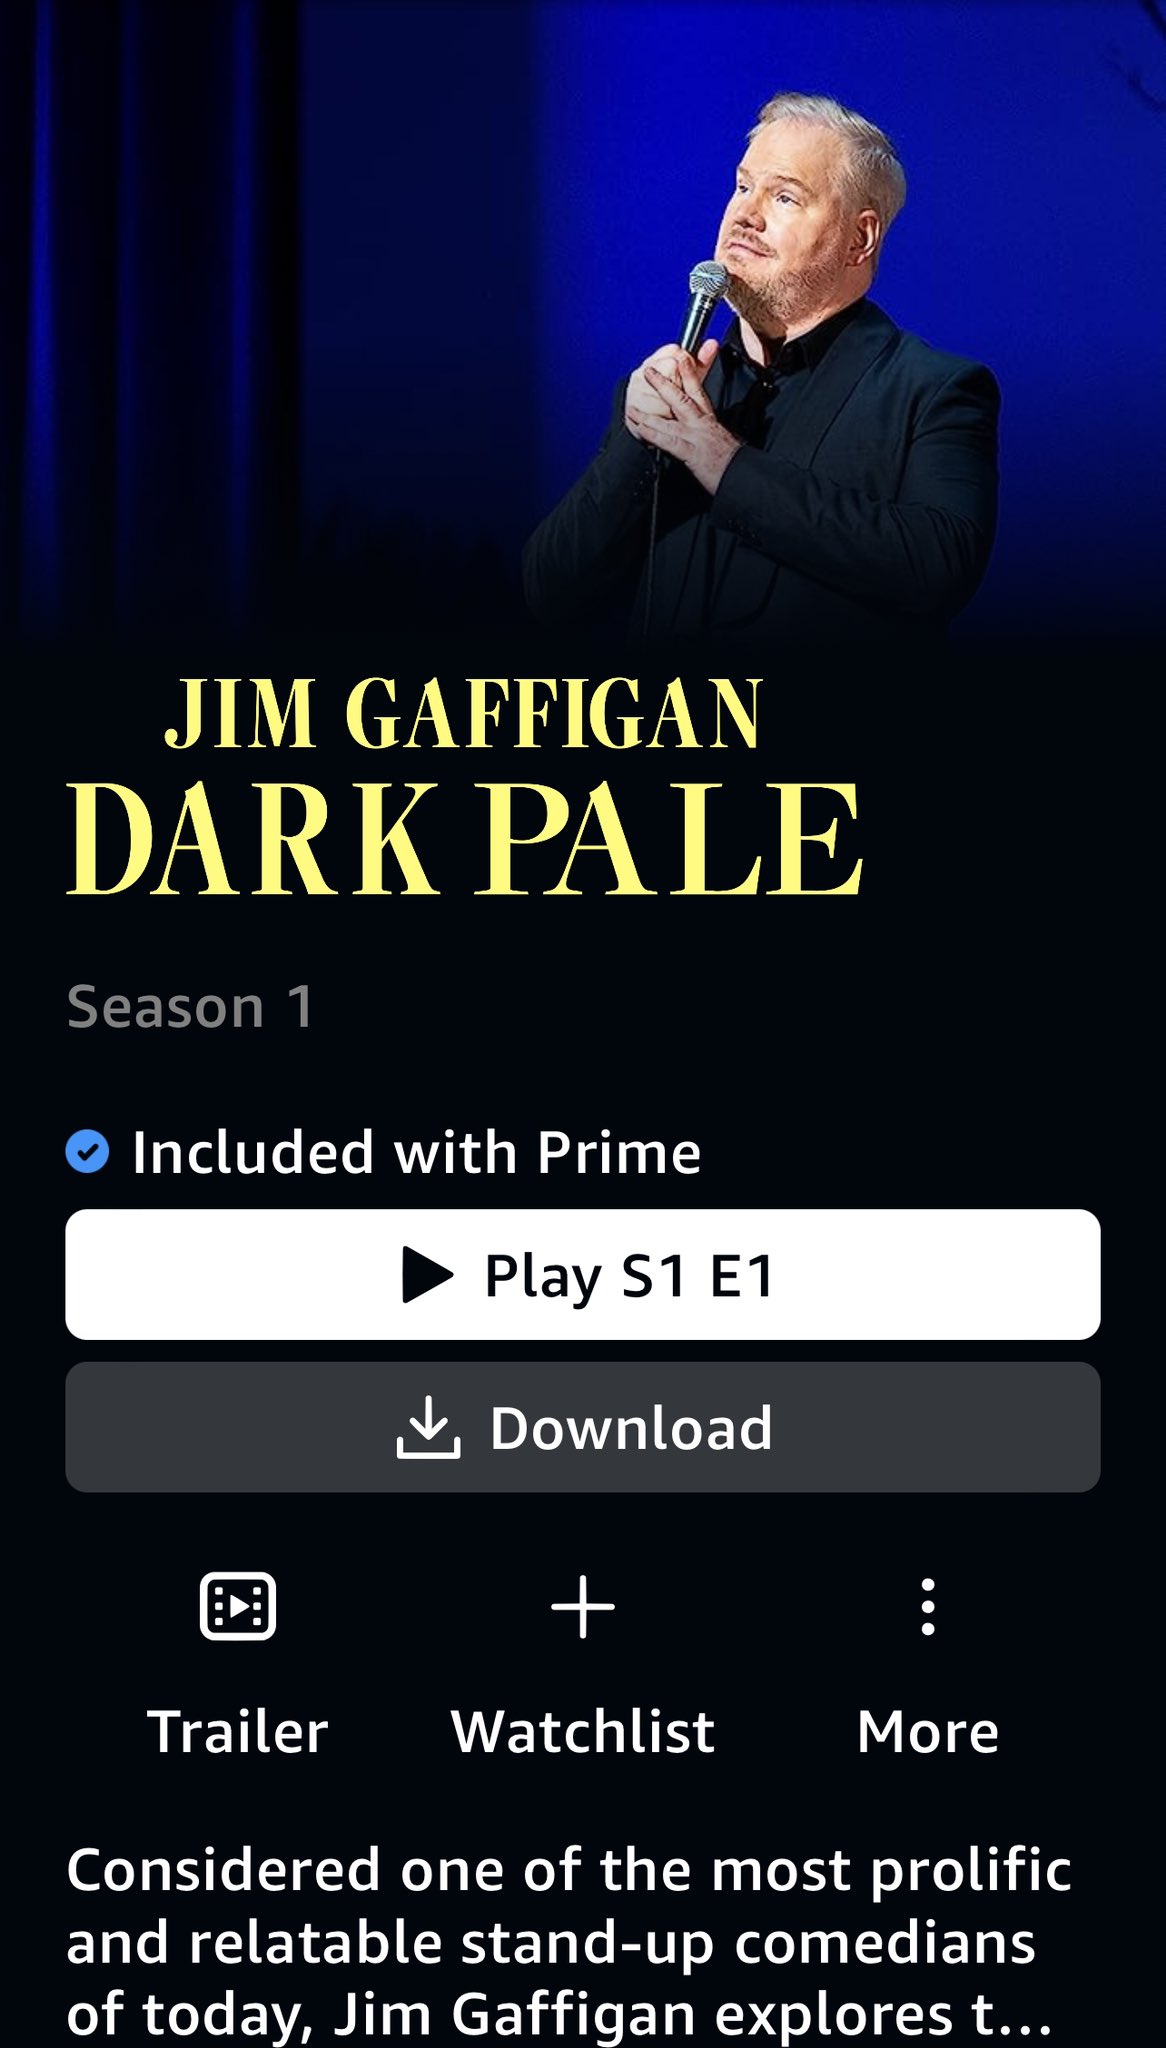 Jim Gaffigan - Dark Pale Tour 